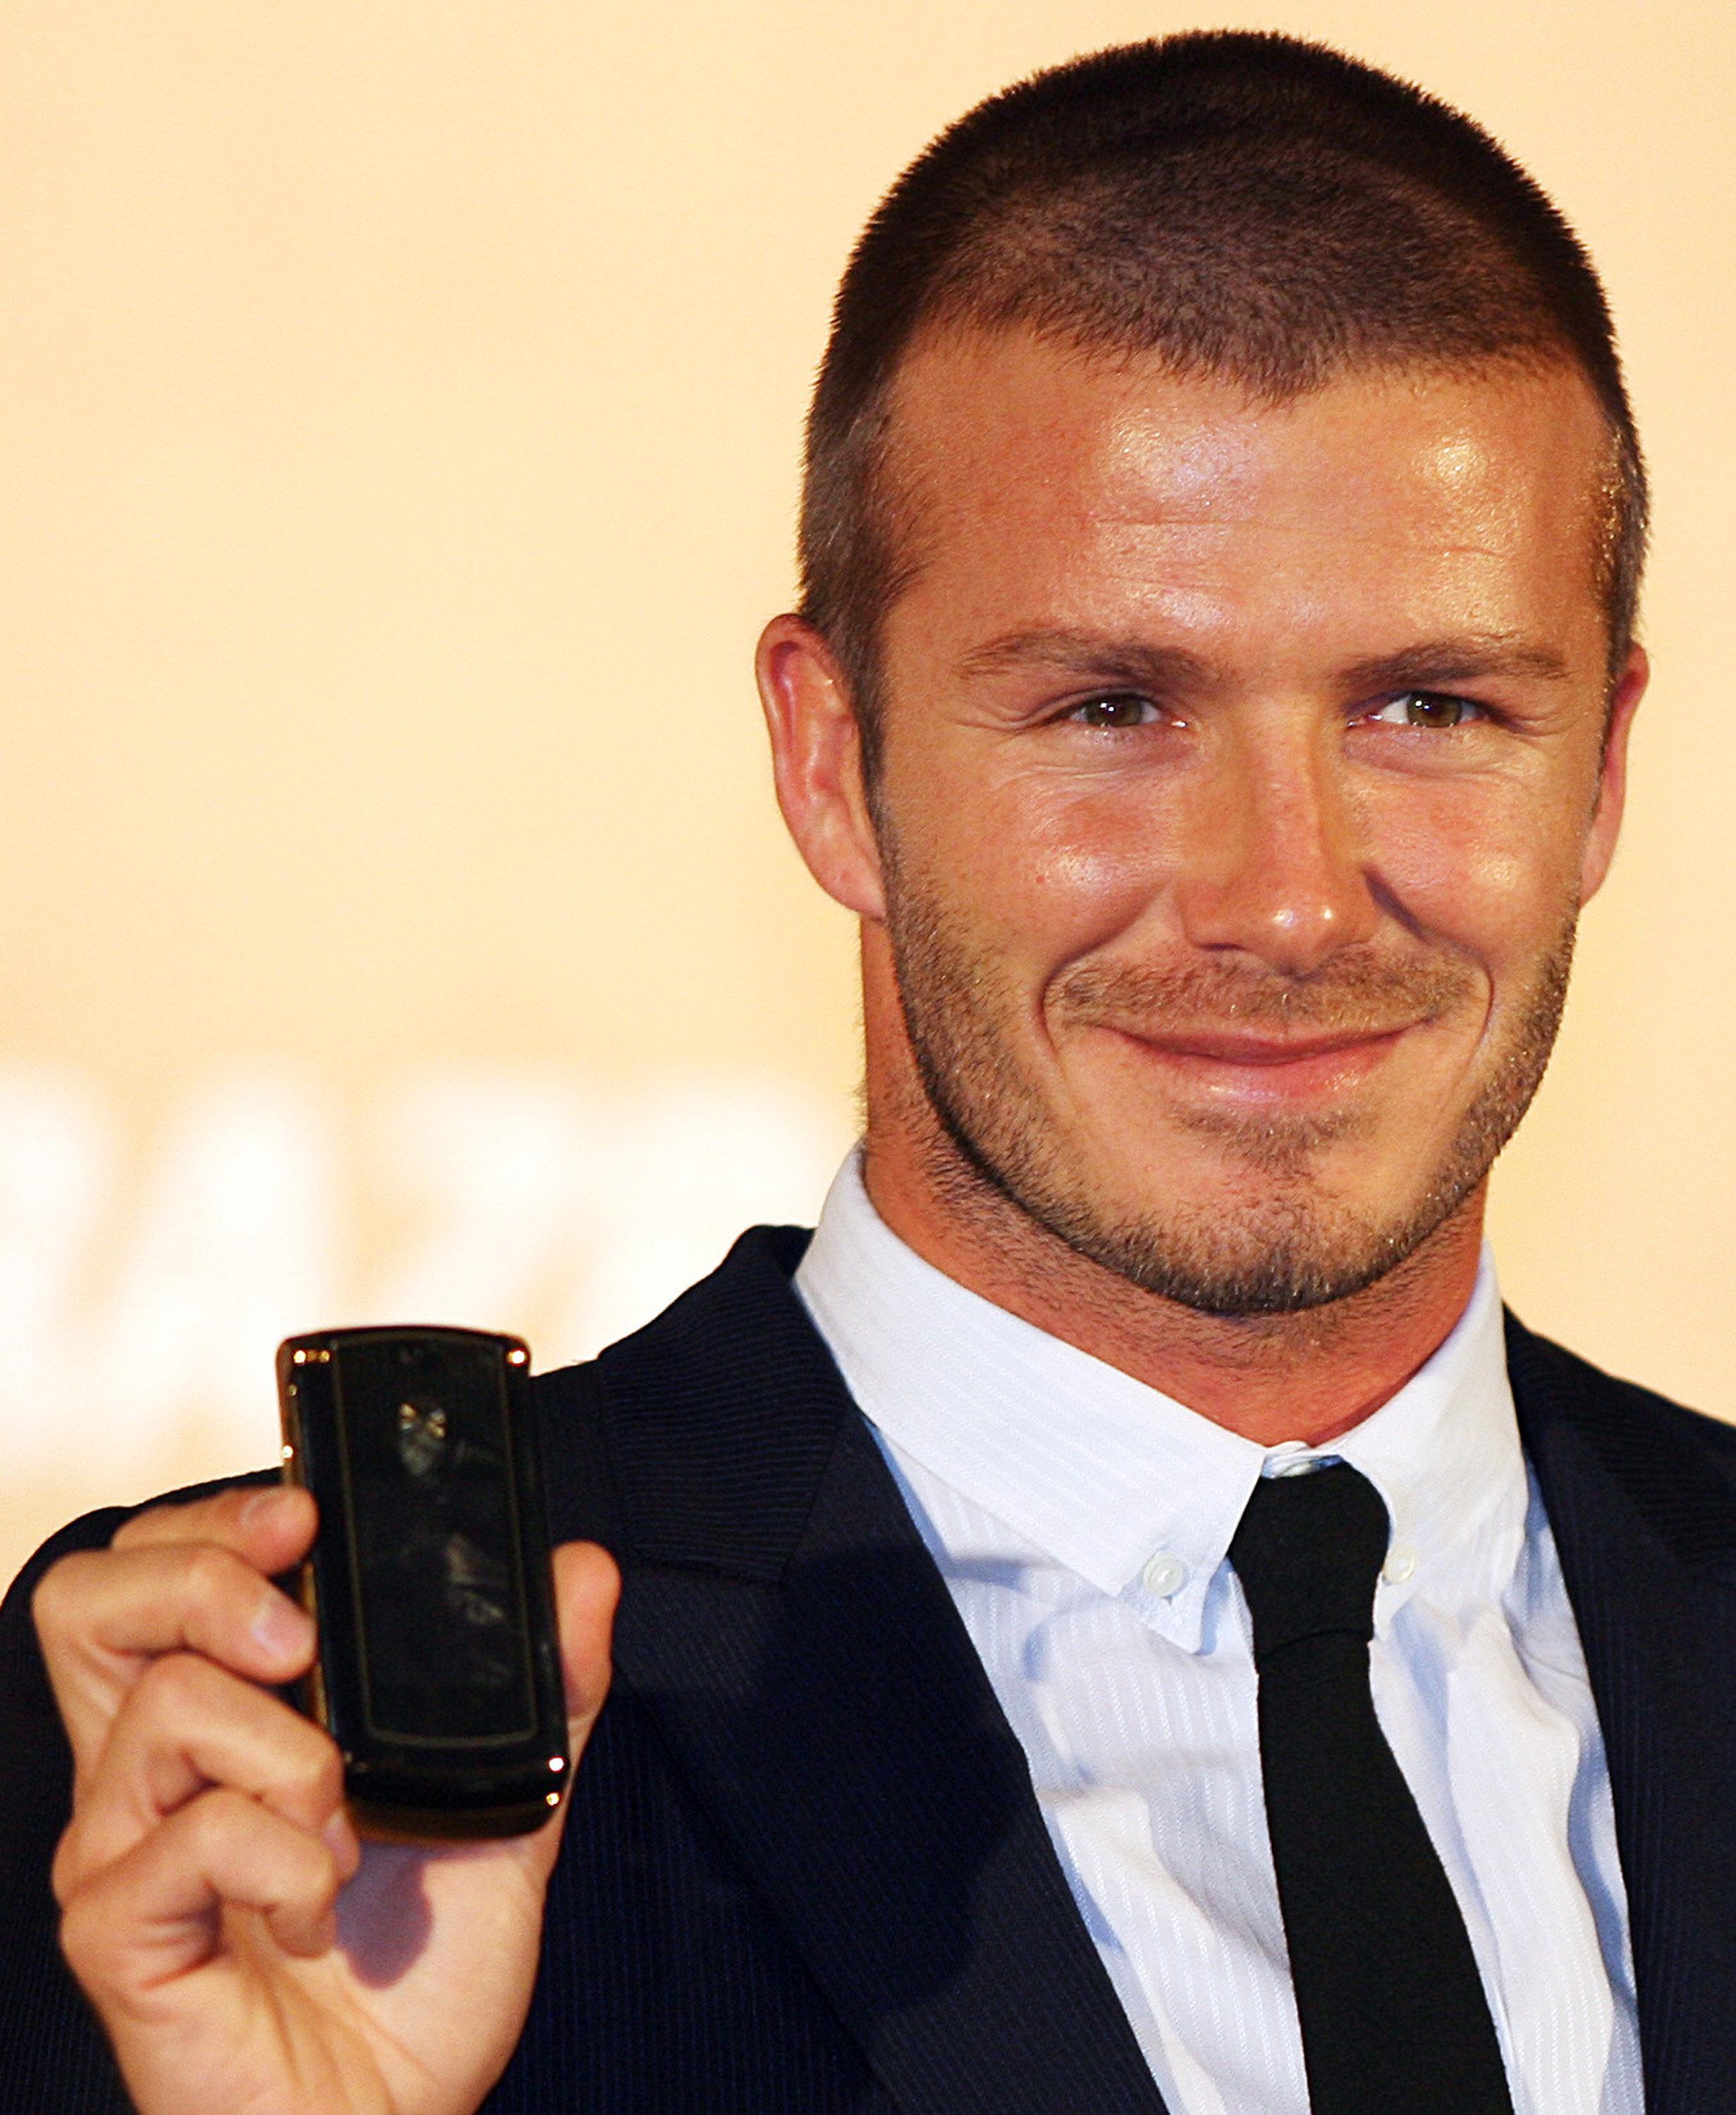   Huyền thoại người Anh David Beckham khoe chiếc Motorola Razr nguyên bản